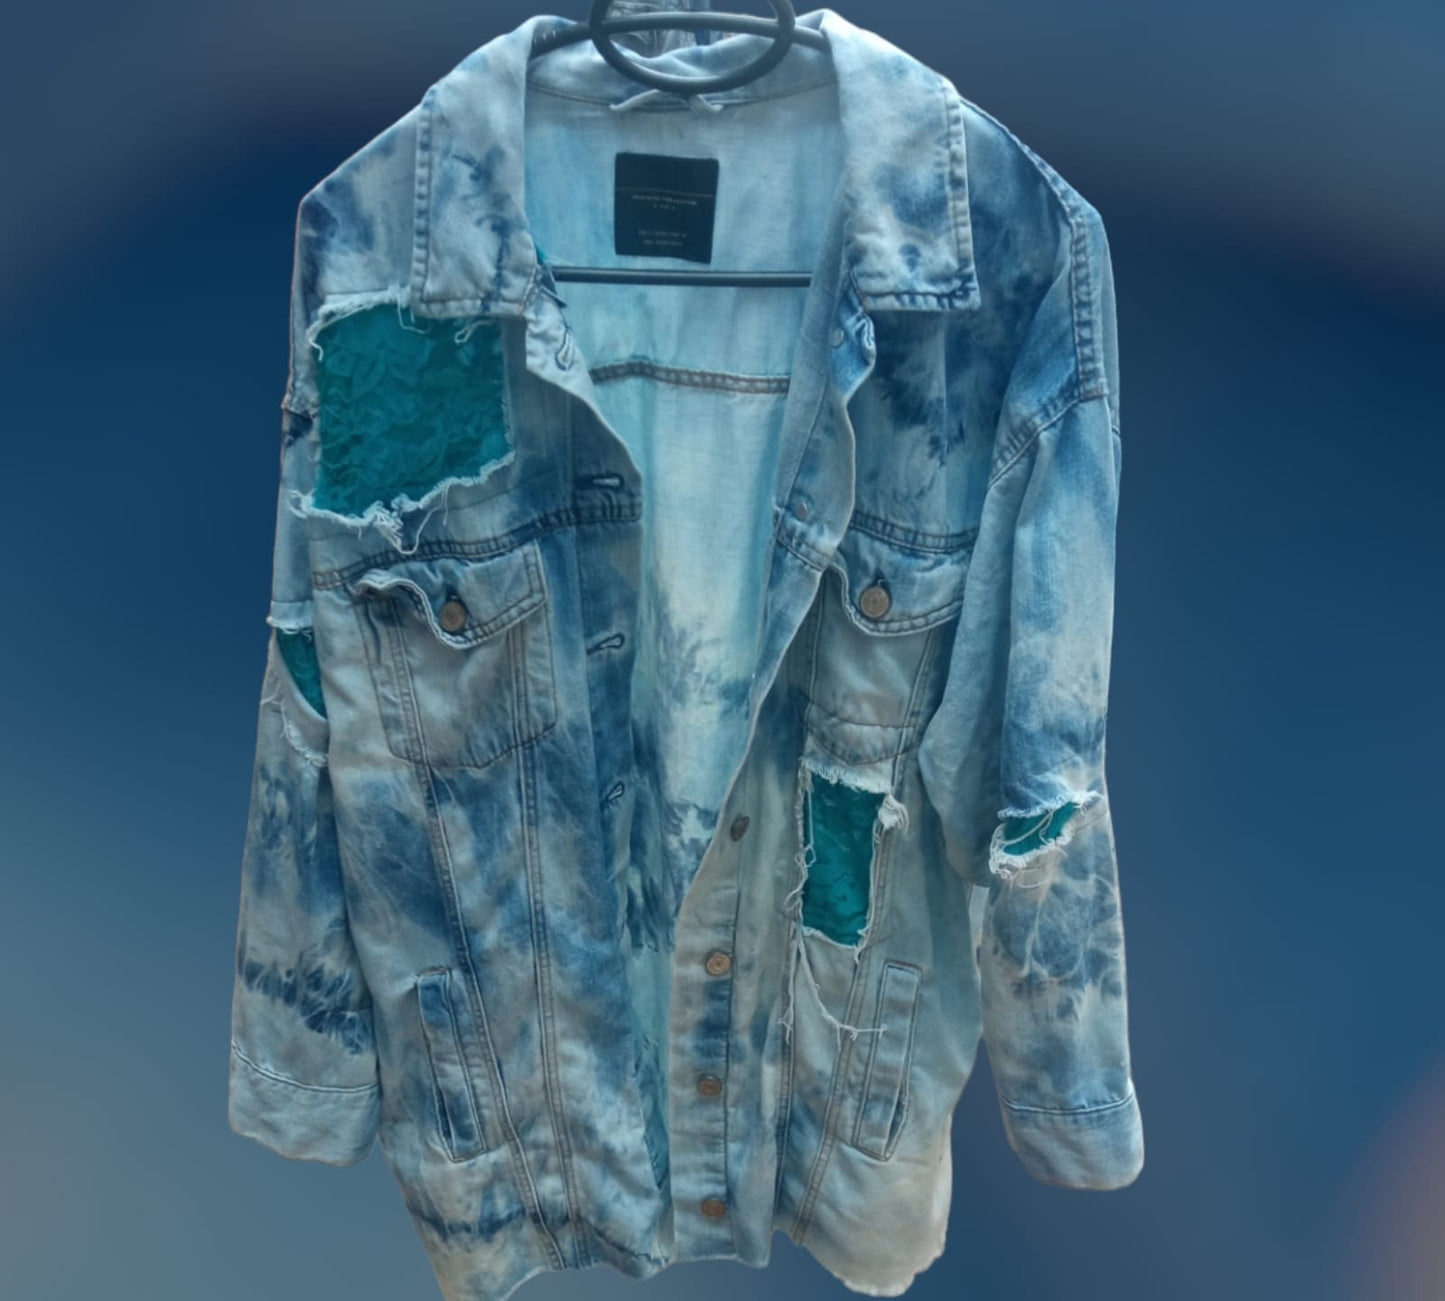 Upcycled denim jacket